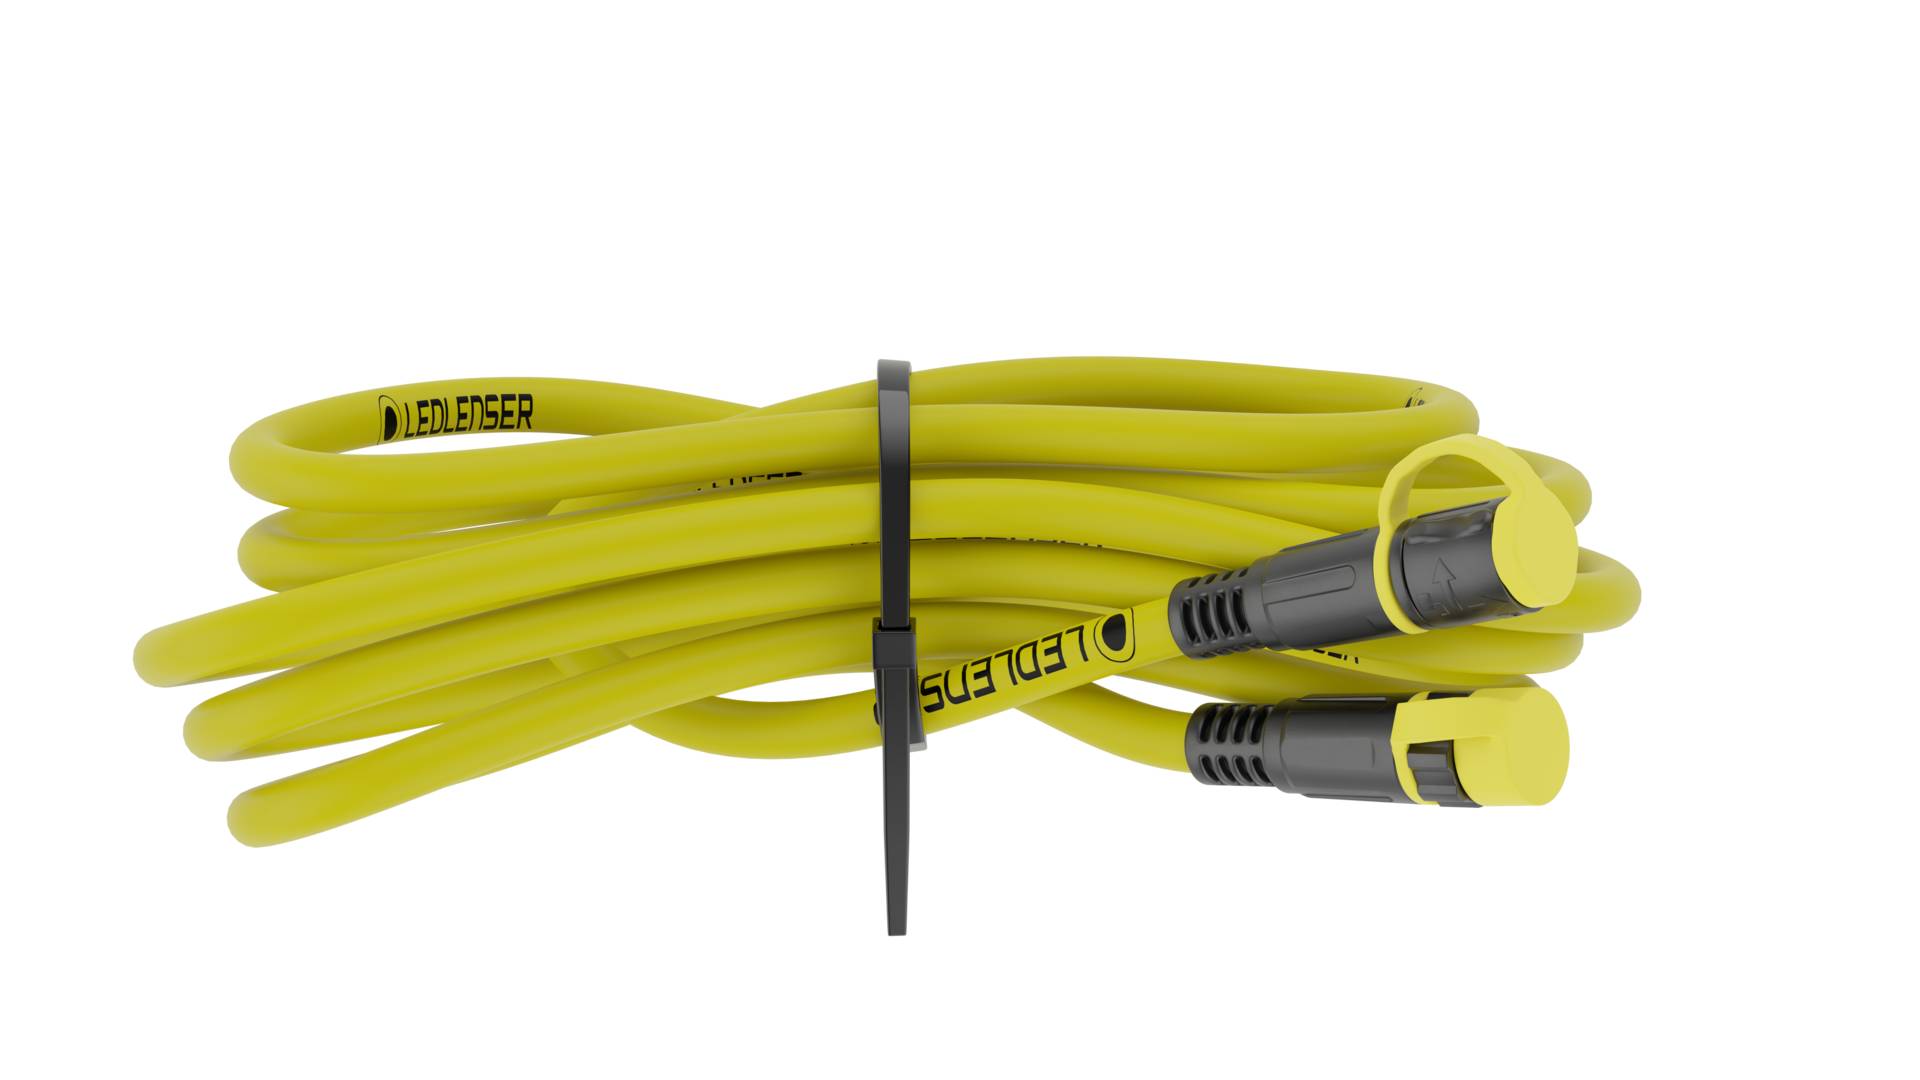 Ledlenser Extension Cable 5 m von Ledlenser GmbH & Co Kg